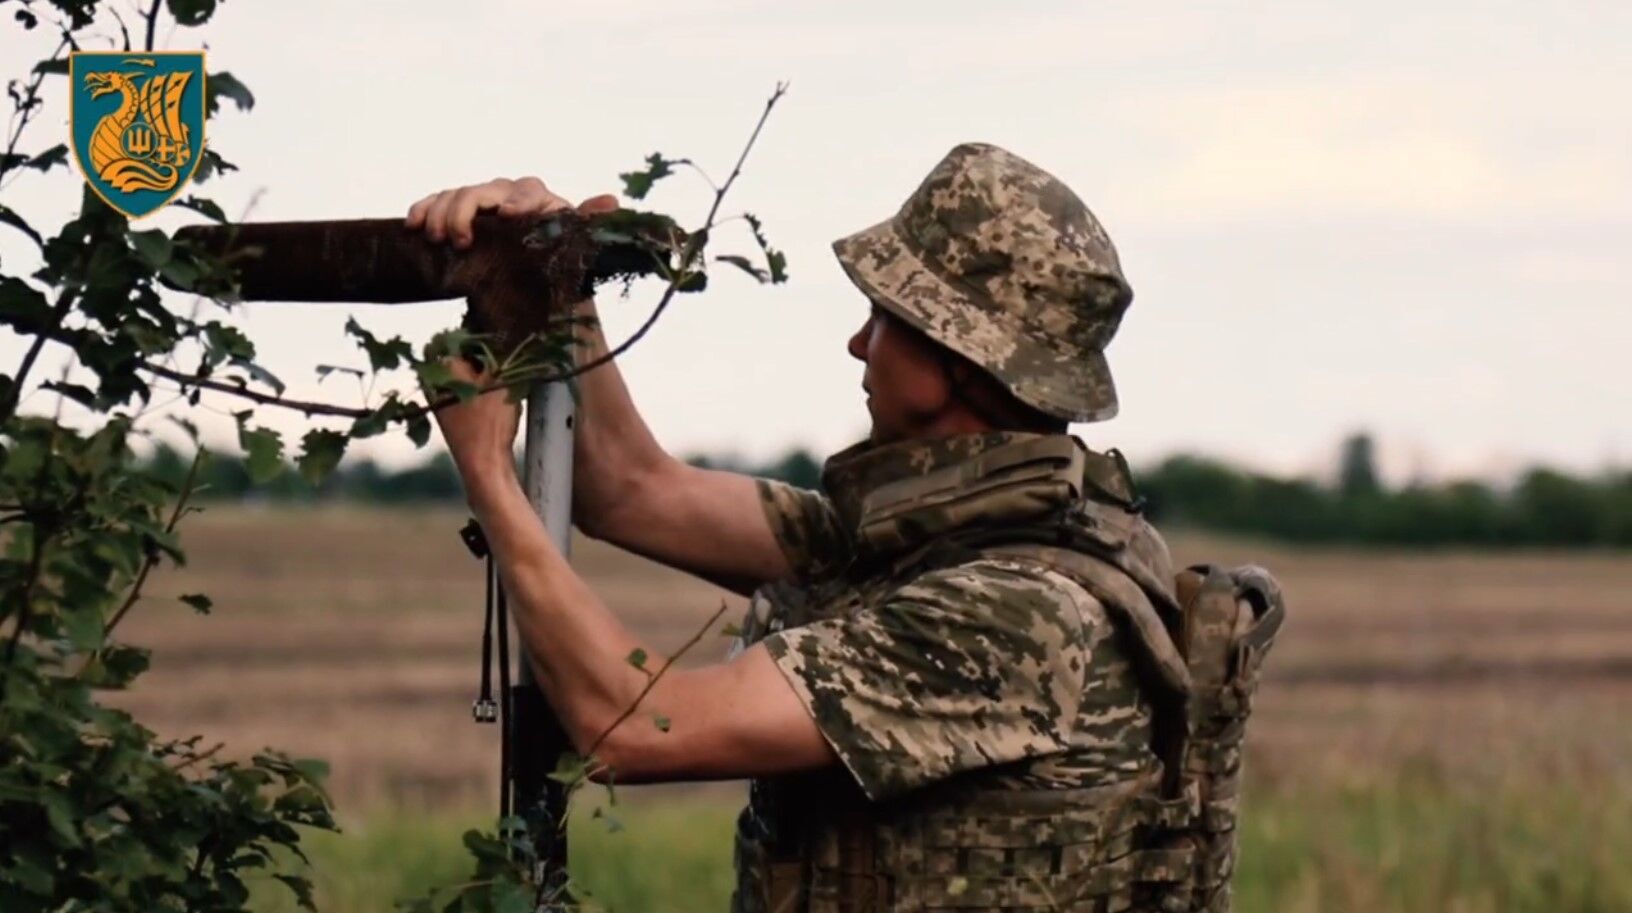 "Залетаем за шиворот врагу и наводим нужный калибр": защитники Украины показали, как работают по оккупантам. Видео